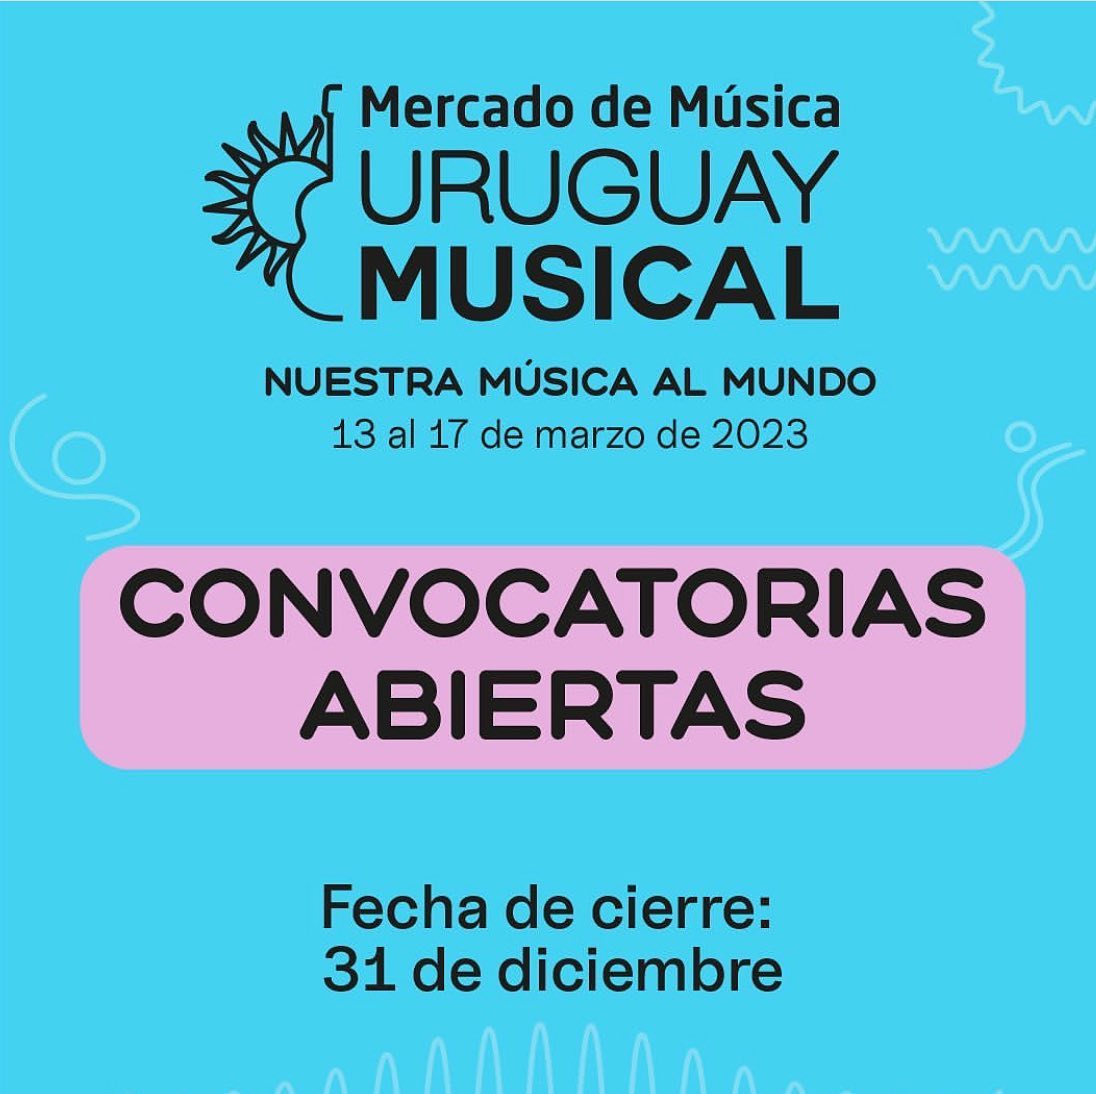 Participa en el Mercado de Música Uruguay Musical 2023